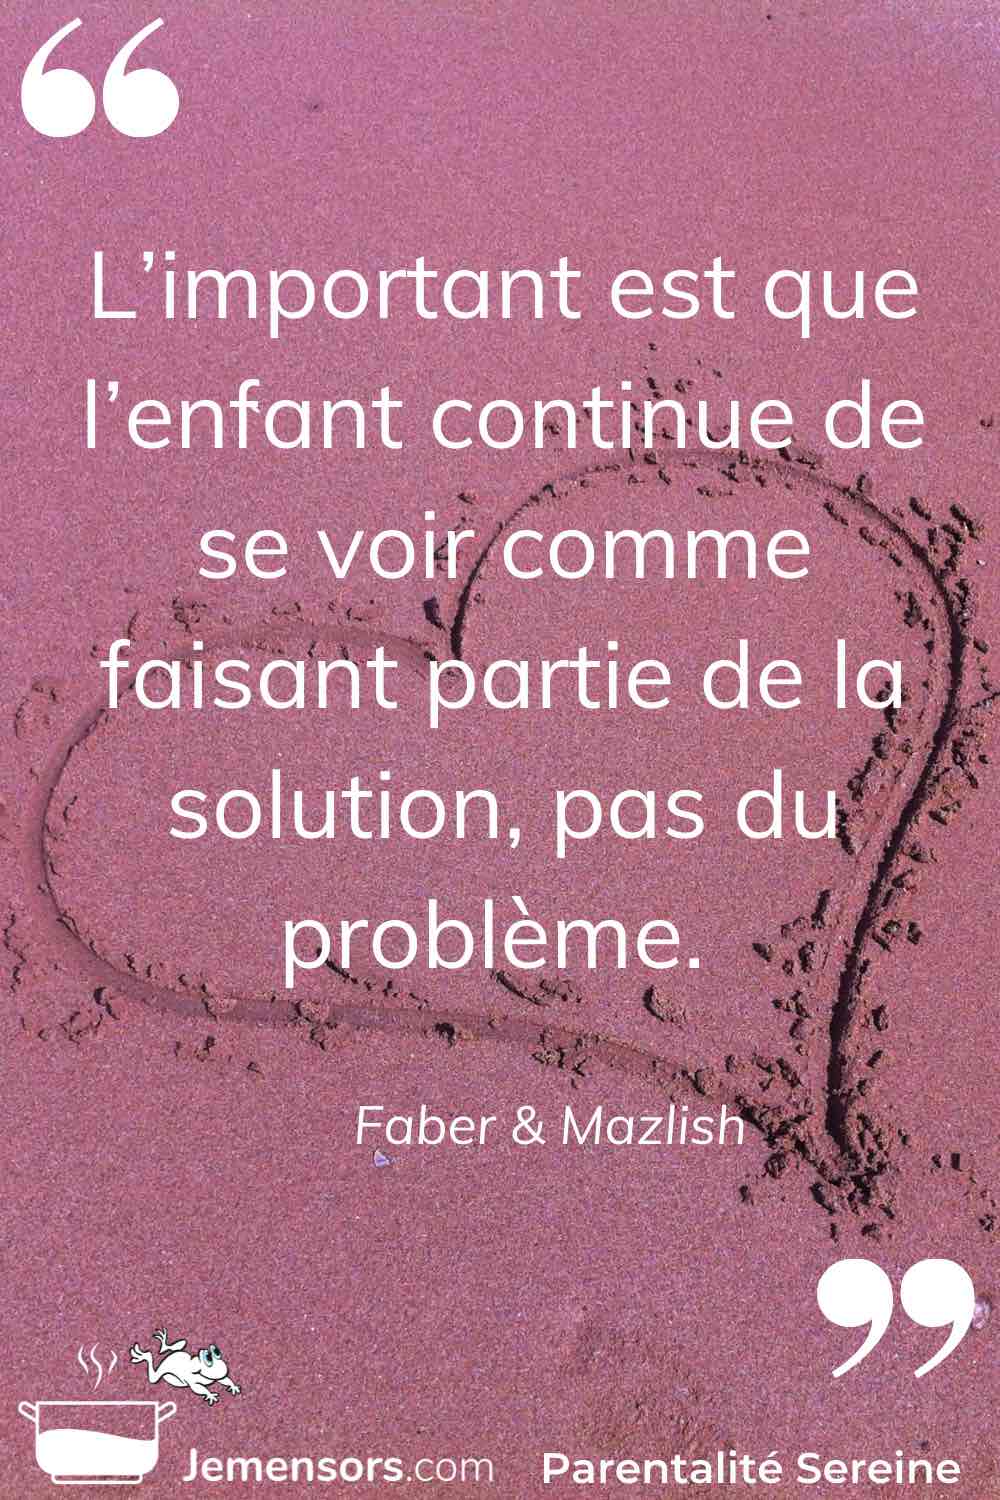 "L’important est que l’enfant continue de se voir comme faisant partie de la solution, pas du problème." Faber & Mazlish